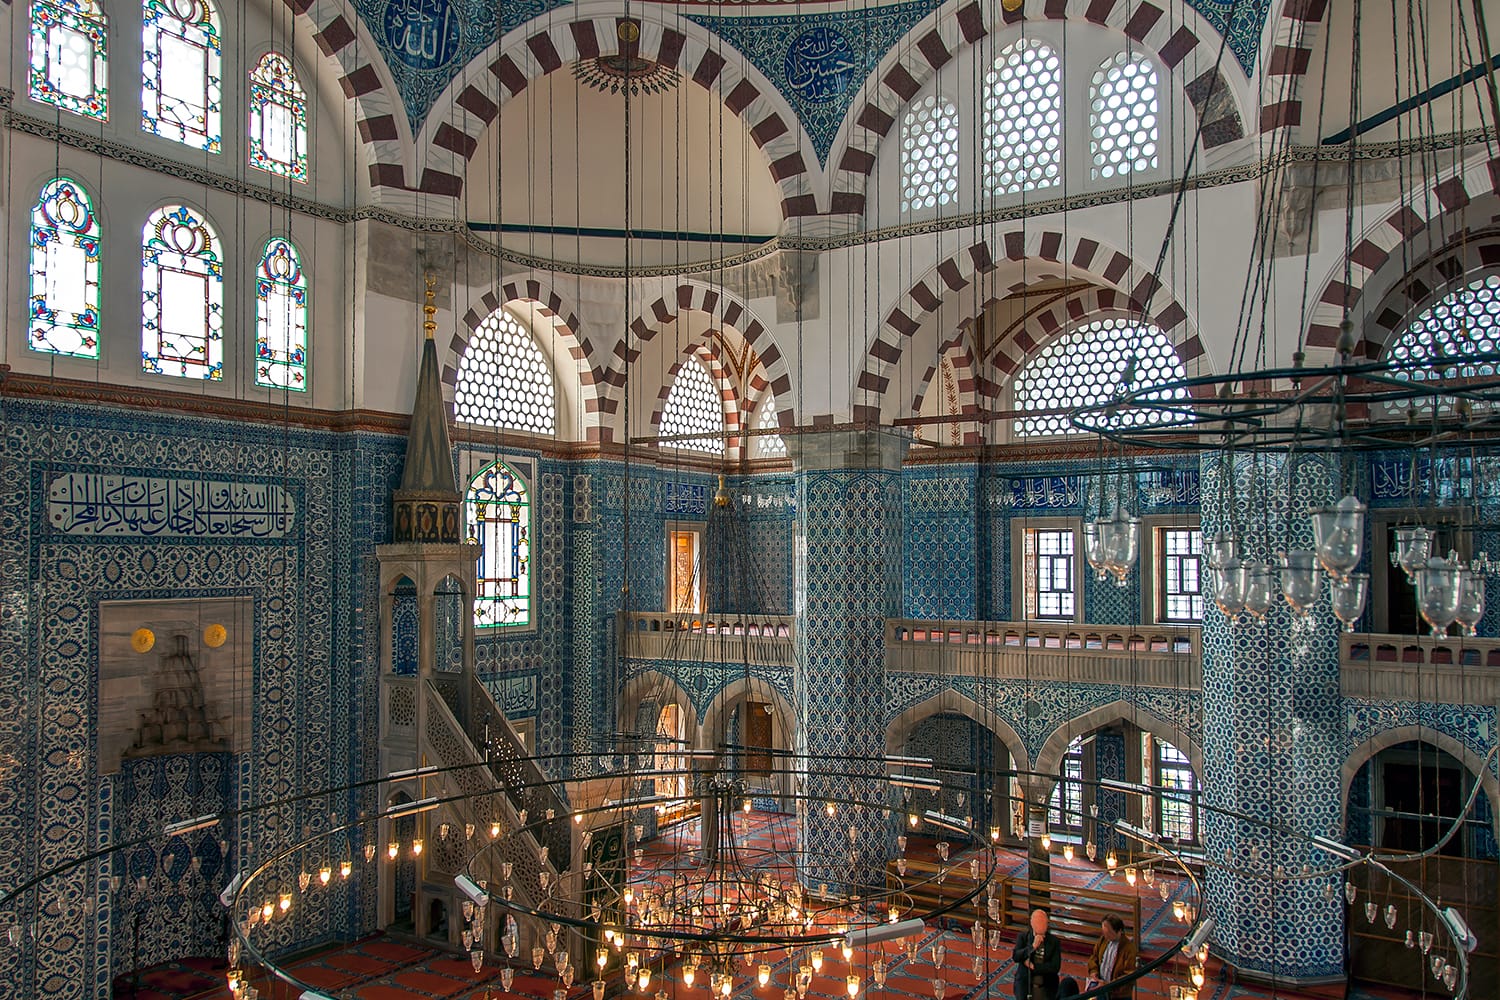 The interior of the Rustem Pasha Mosque